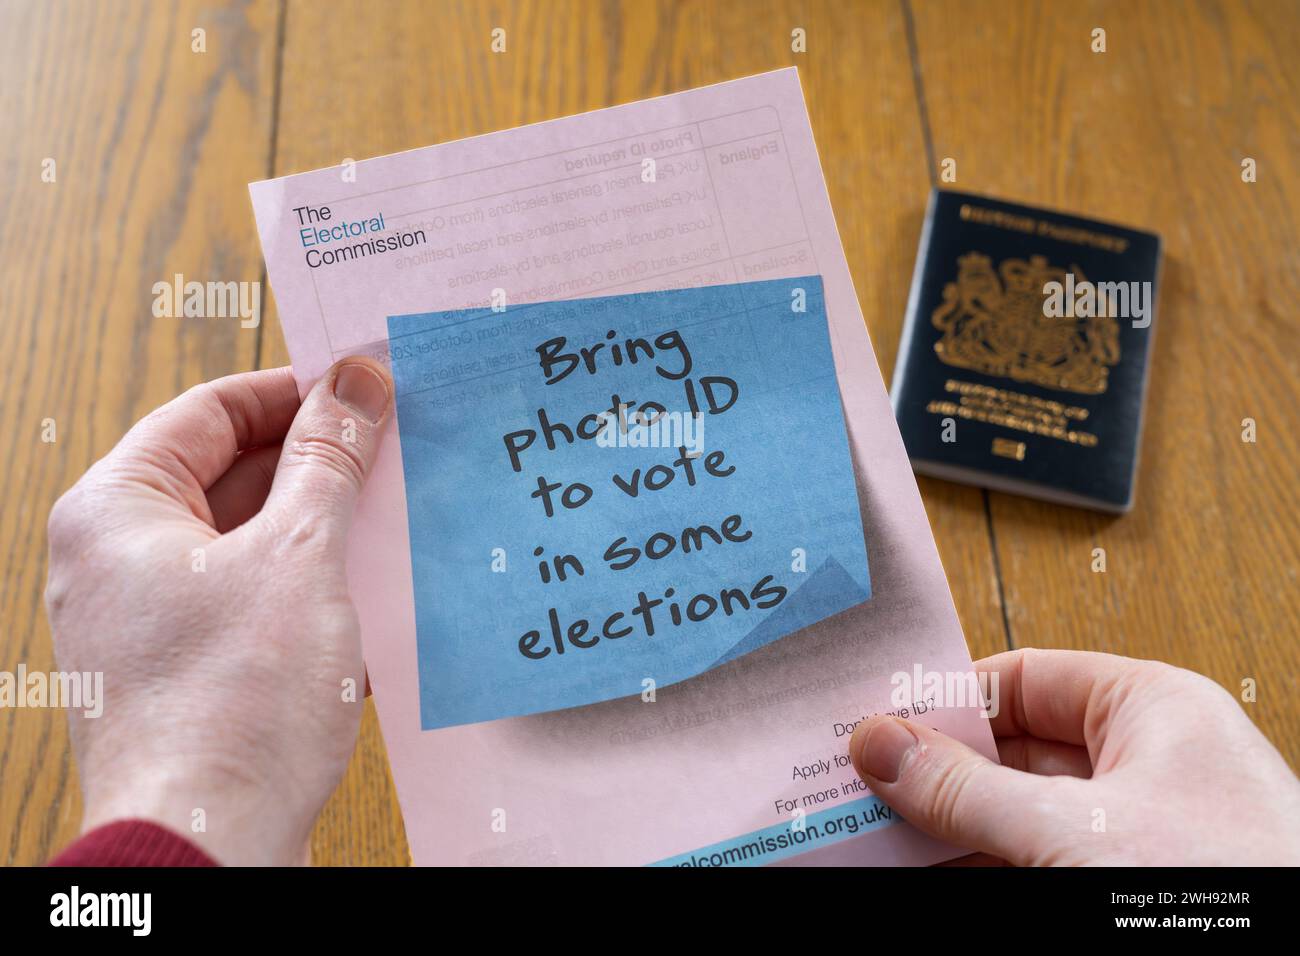 Un uomo che detiene un volantino della commissione elettorale in cui si afferma che in alcune elezioni è richiesto un documento d'identità con foto, con un passaporto britannico sullo sfondo. Inghilterra Foto Stock